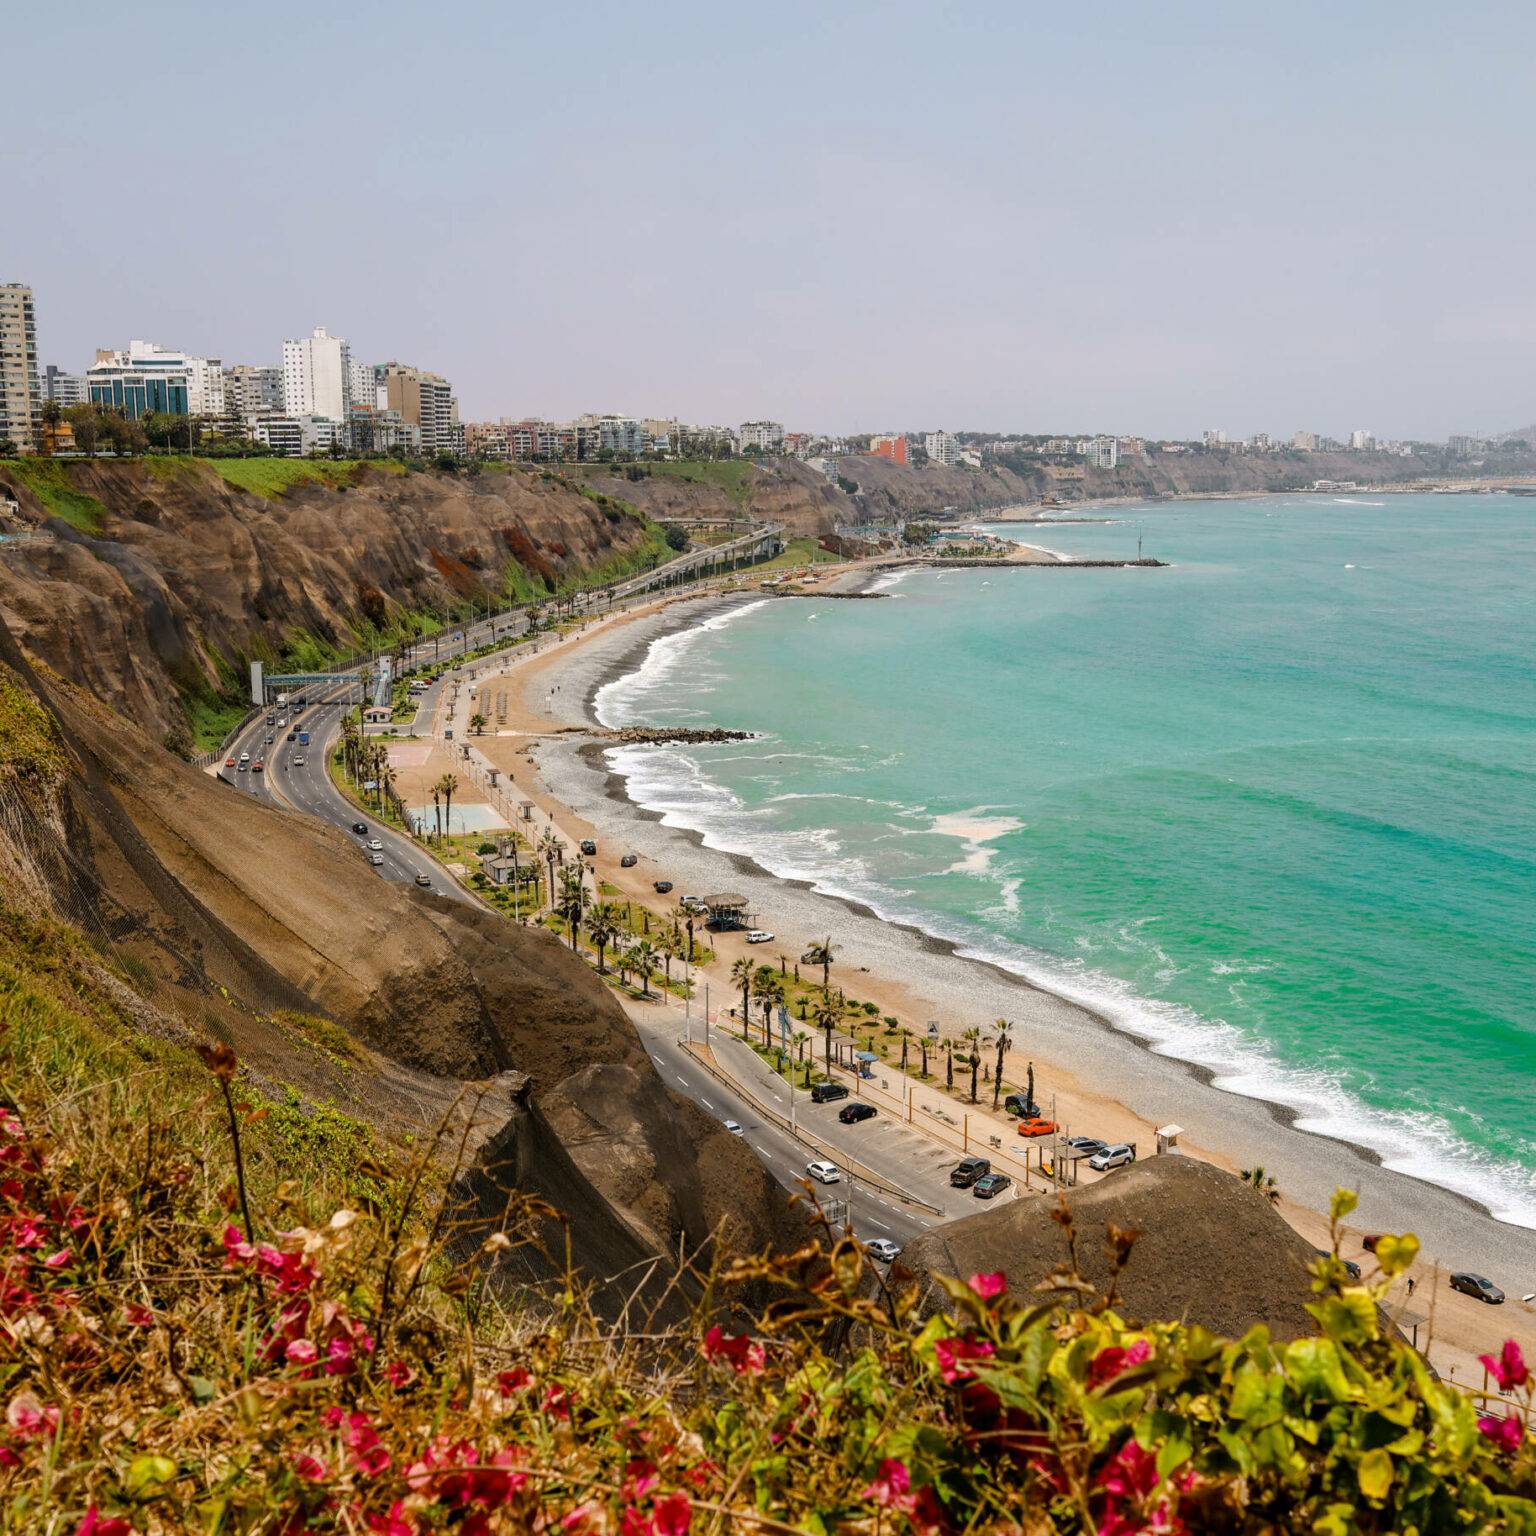 Der Ausblick auf Limas Küste mit grünen Hügeln und türkisblauem Meer.